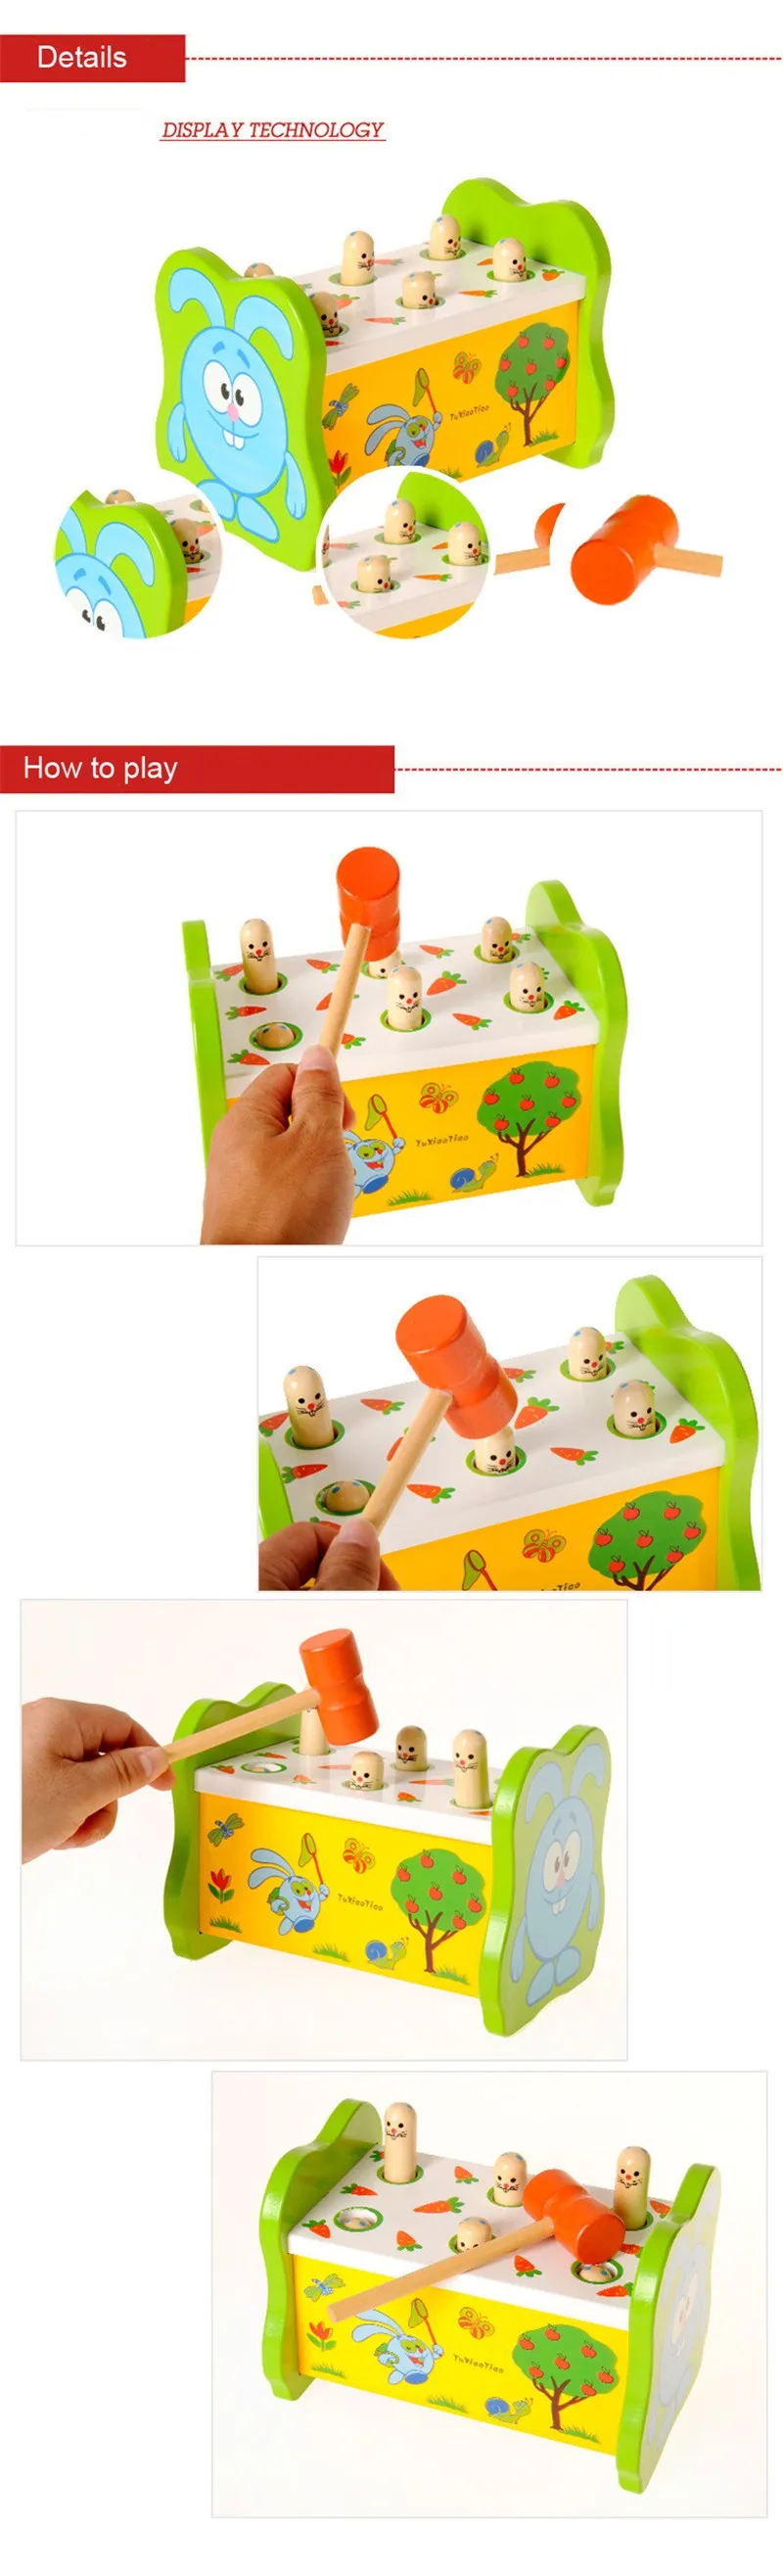 Деревянный Молотки ing скамейка детская Погремушки игрушка Молотки цветные деревянные колышки игры Симпатичные Мышь детские игрушки подарки